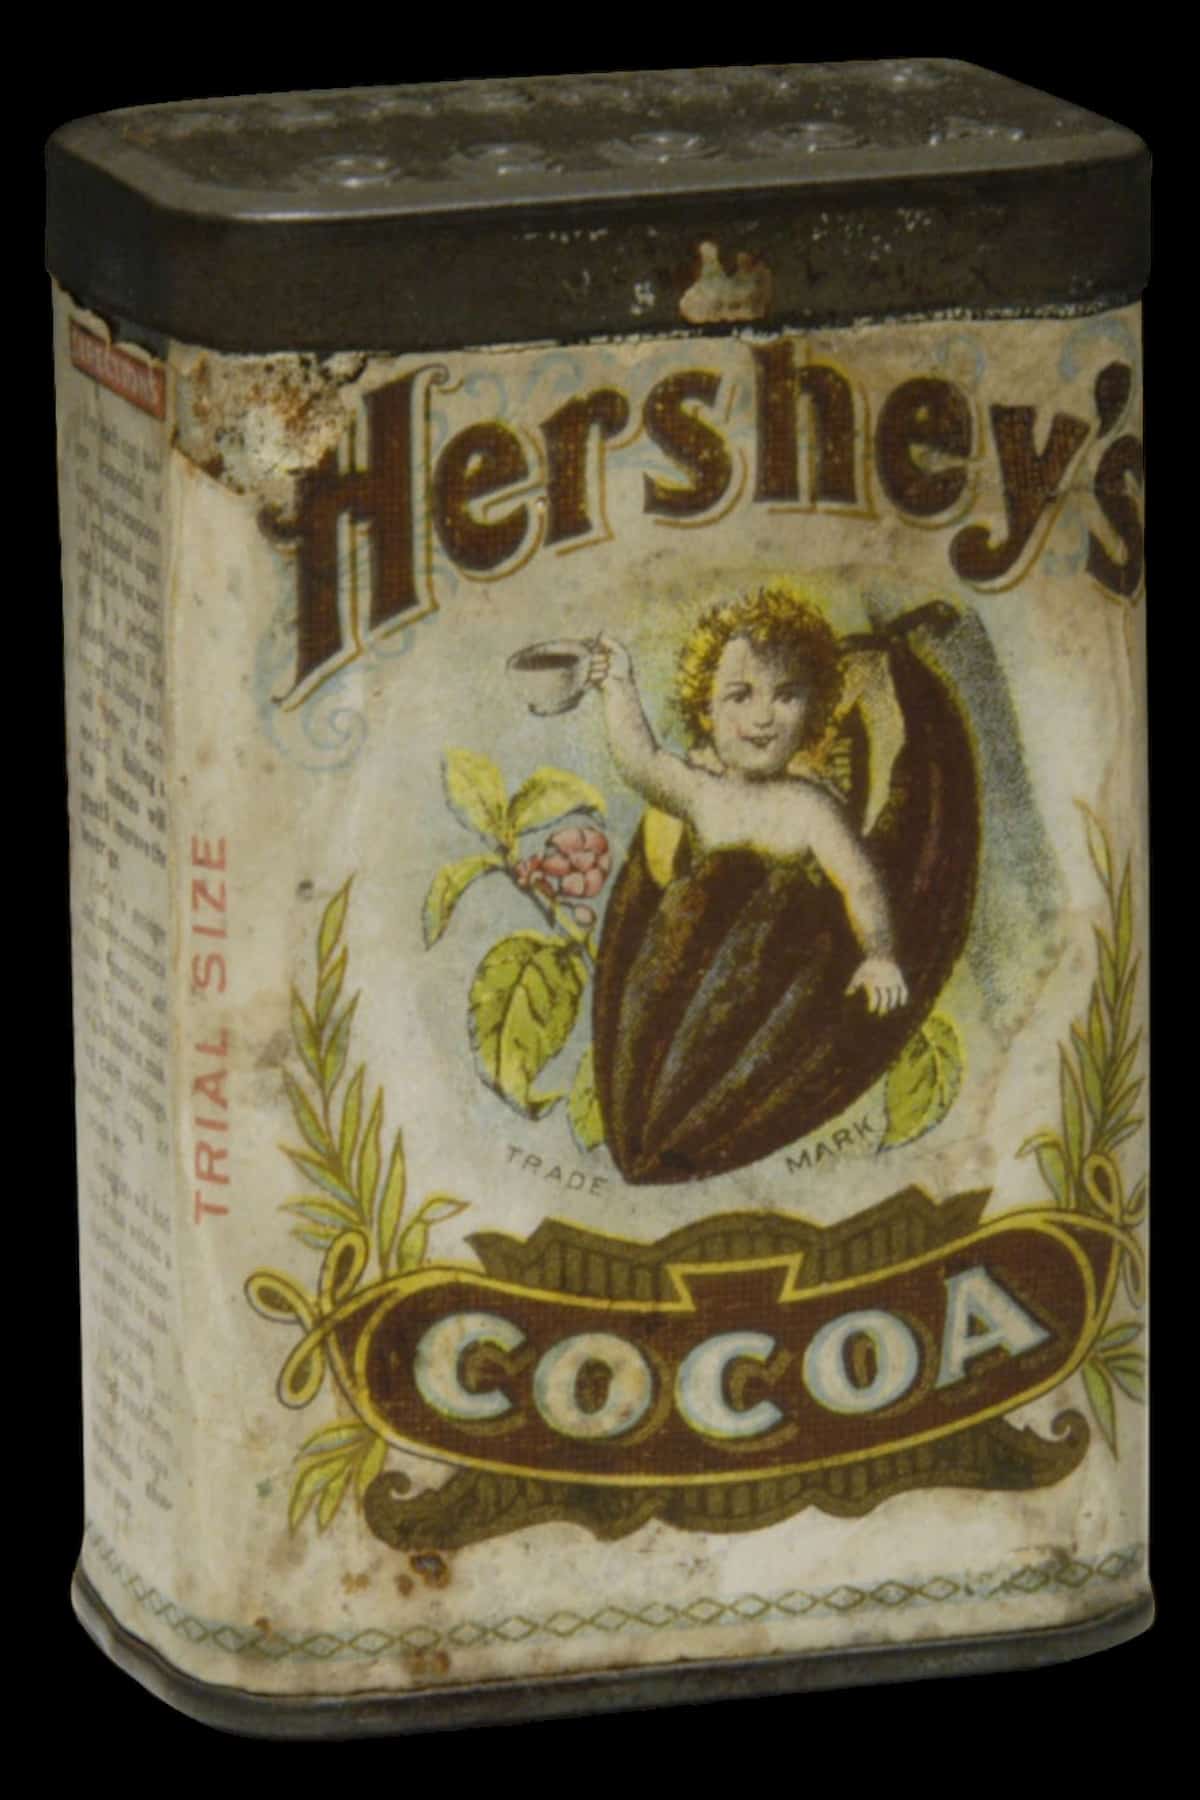 original Hersheys tin from 1800s.